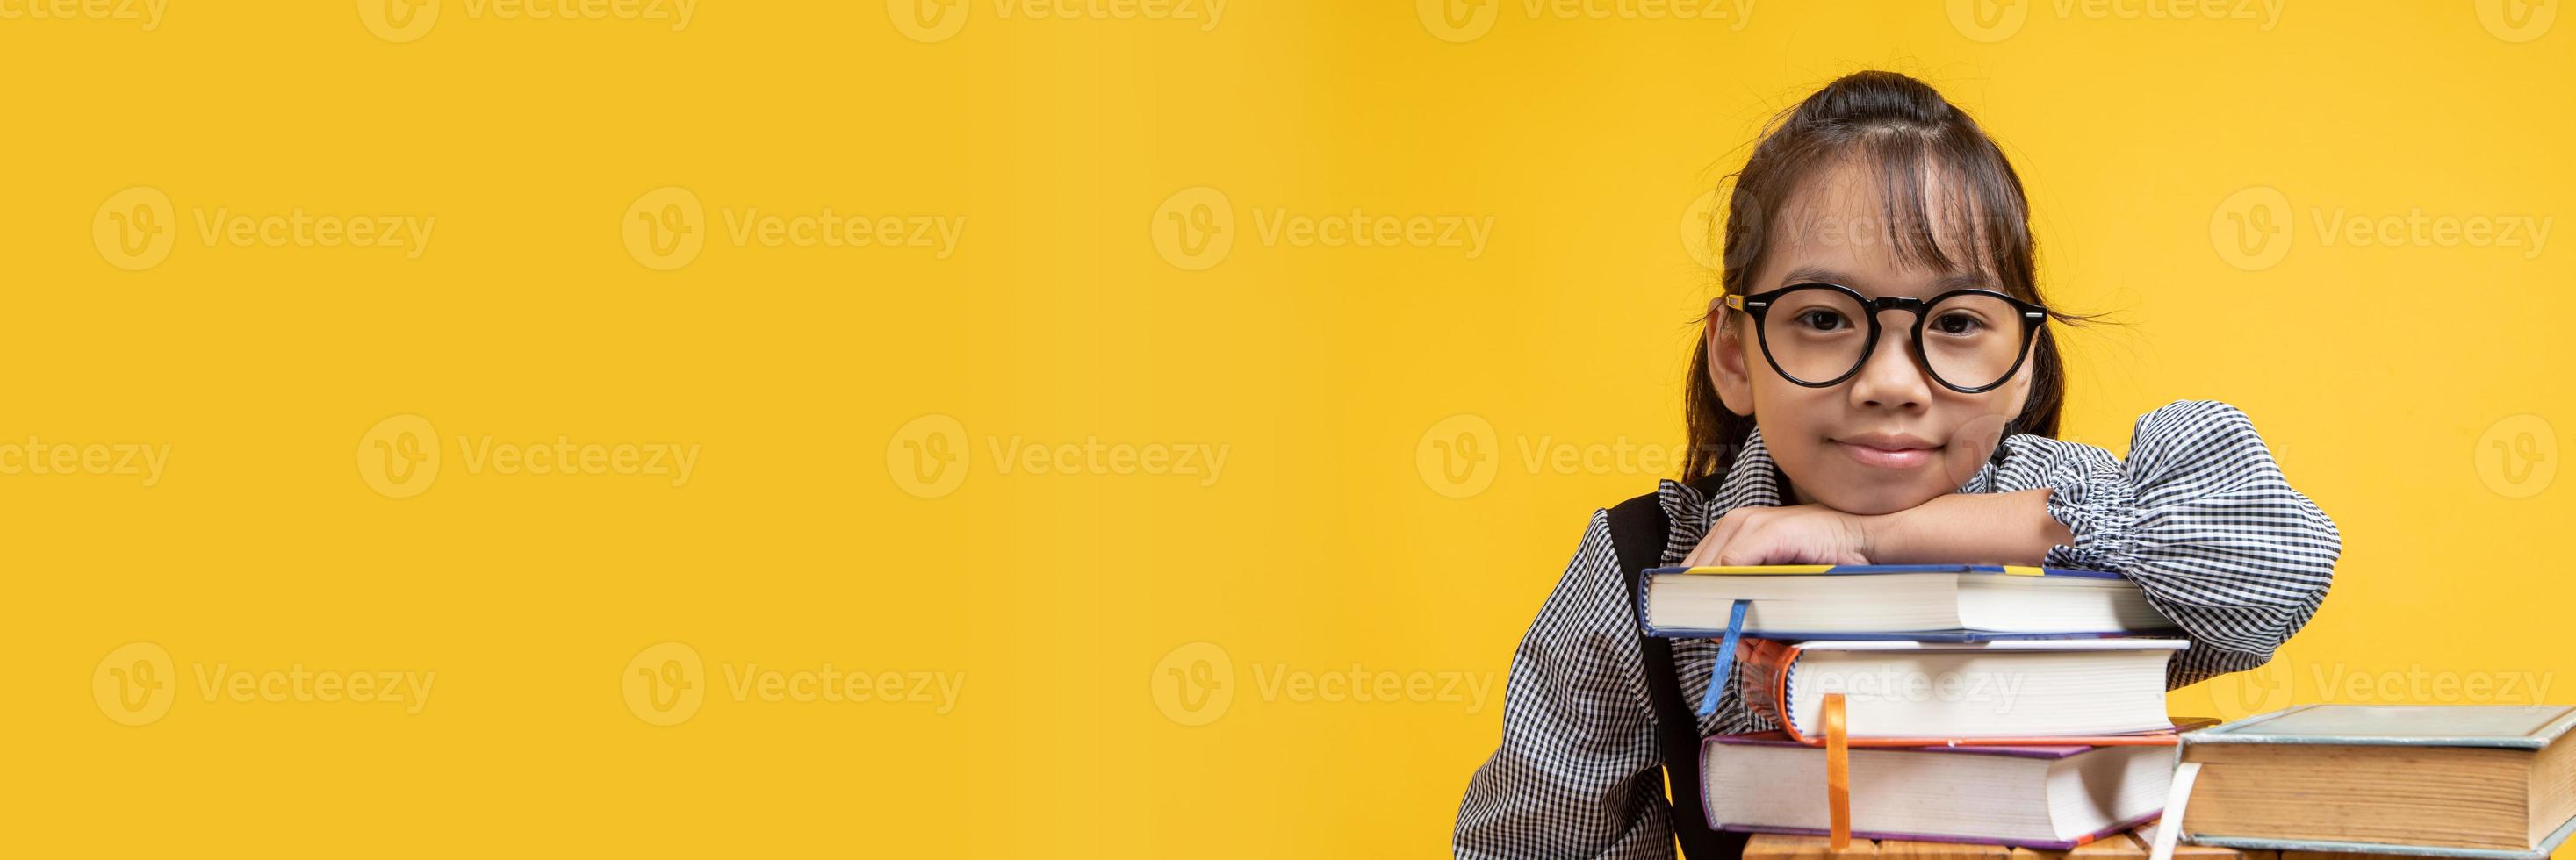 thailändsk asiatisk tjej som bär glasögon lutar på buntböcker och ser kamera med gul bakgrund foto